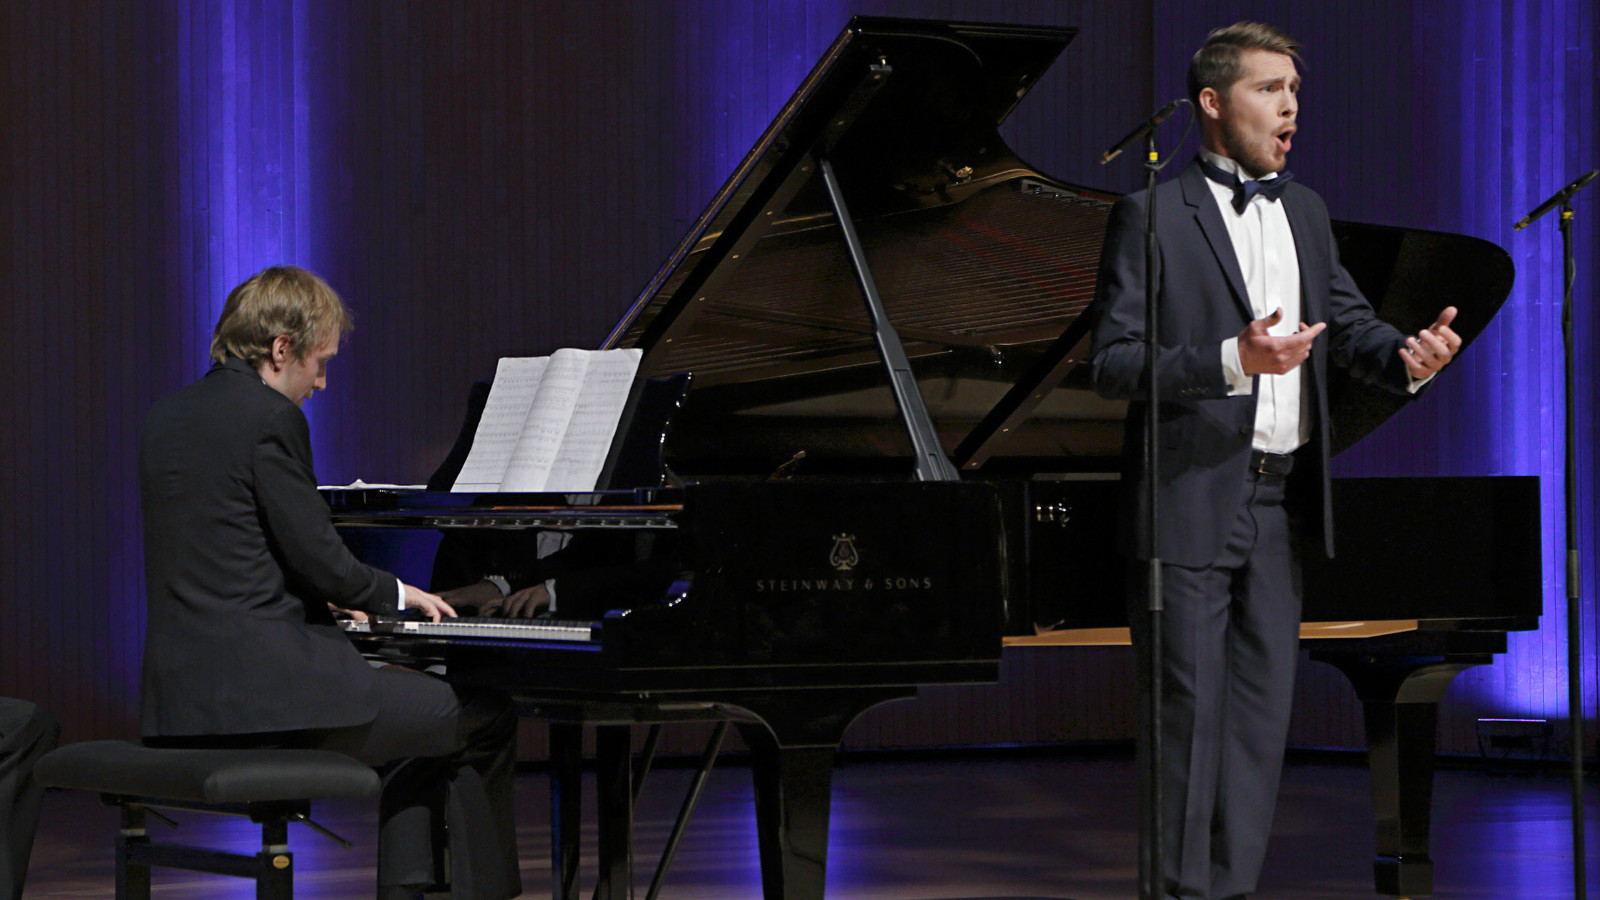 Kuvassa on sivuttain pianisti Juho Alakärppä flyygelin ääressä soittamassa.  Lavalla oikealla on laulamassa Aarne Pelkonen. Taustalla on sini-mustaa verhoa.